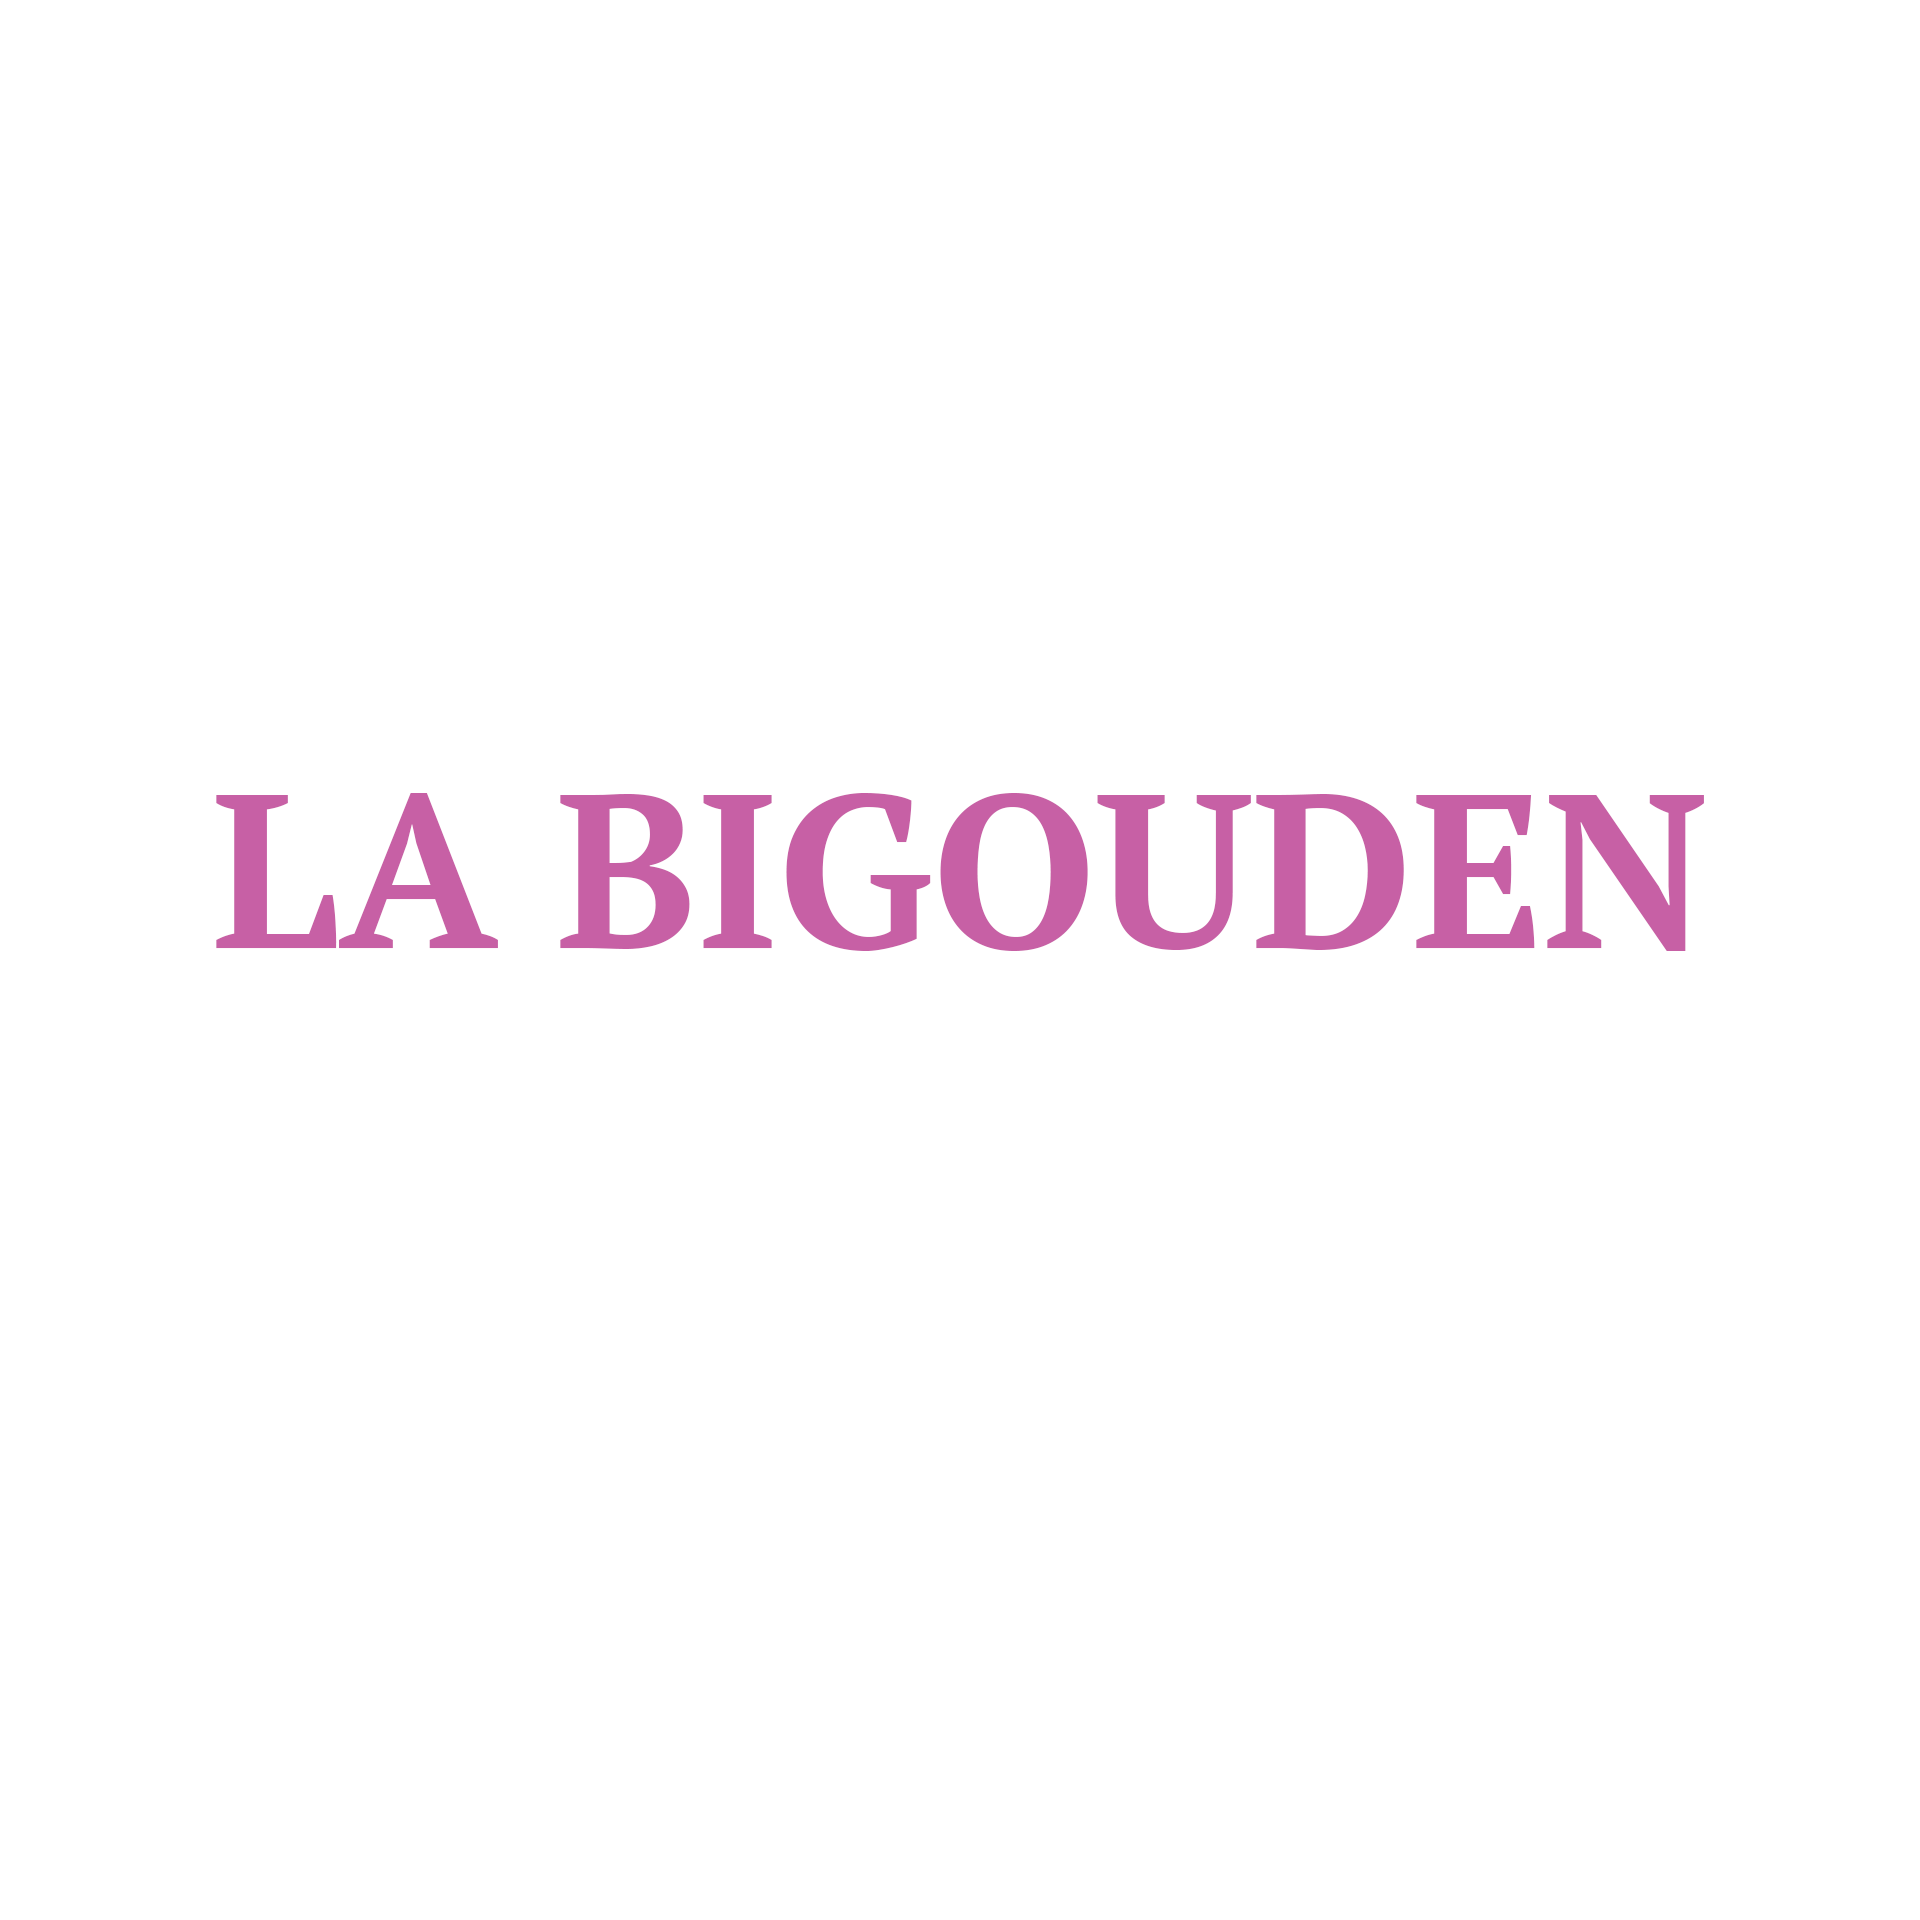 Bigouden logo